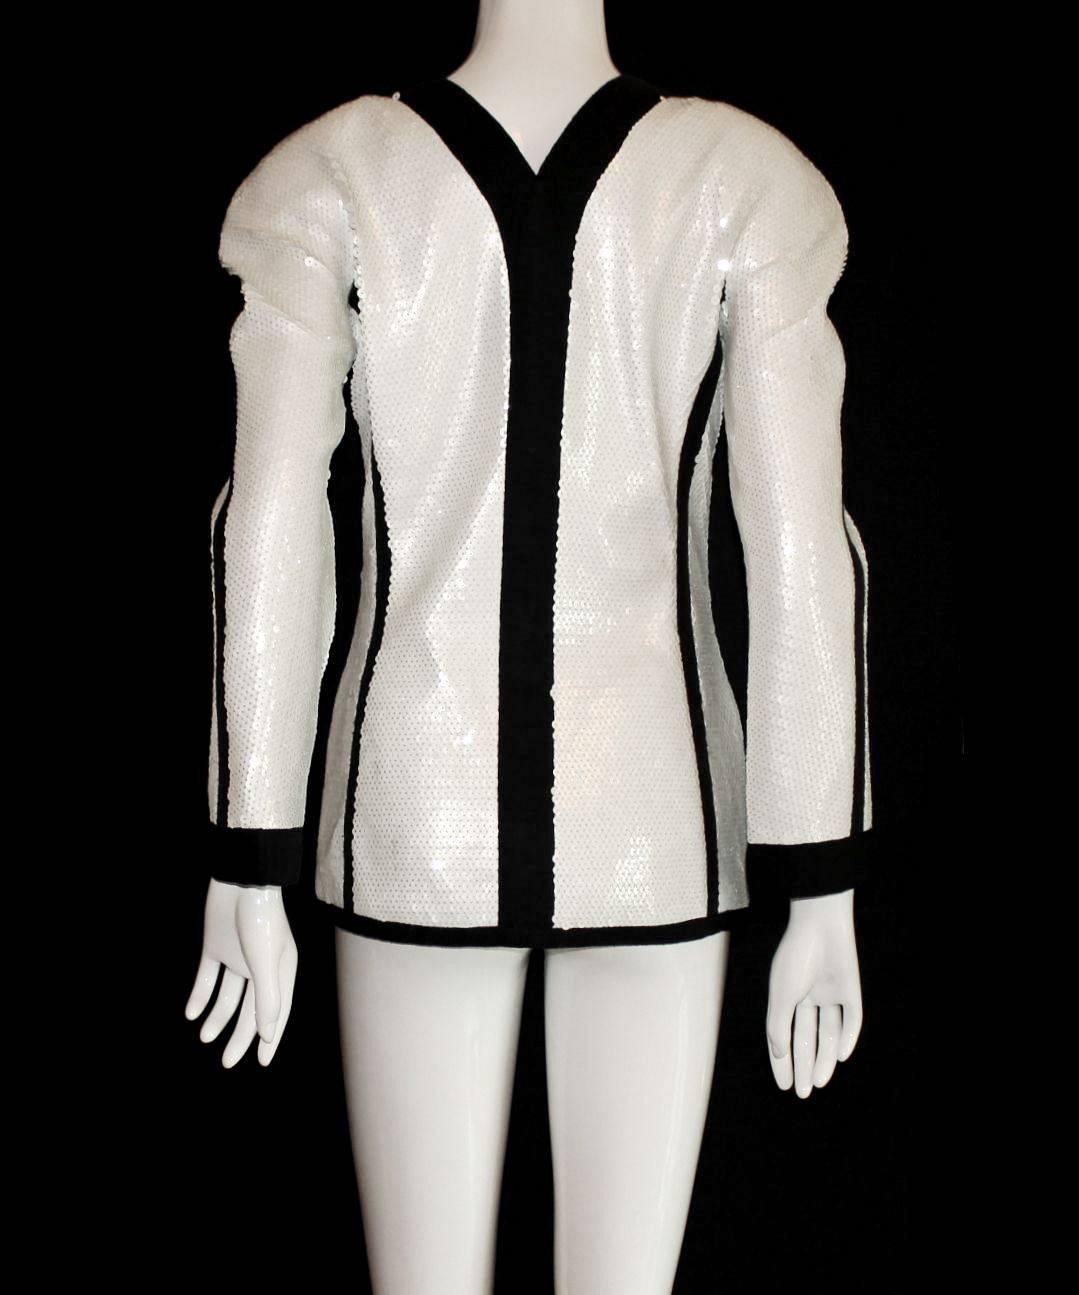 Beige Rare Museum Piece 1990s Chanel Sequin Jacket shown at Met Museum 2005 Exhibition